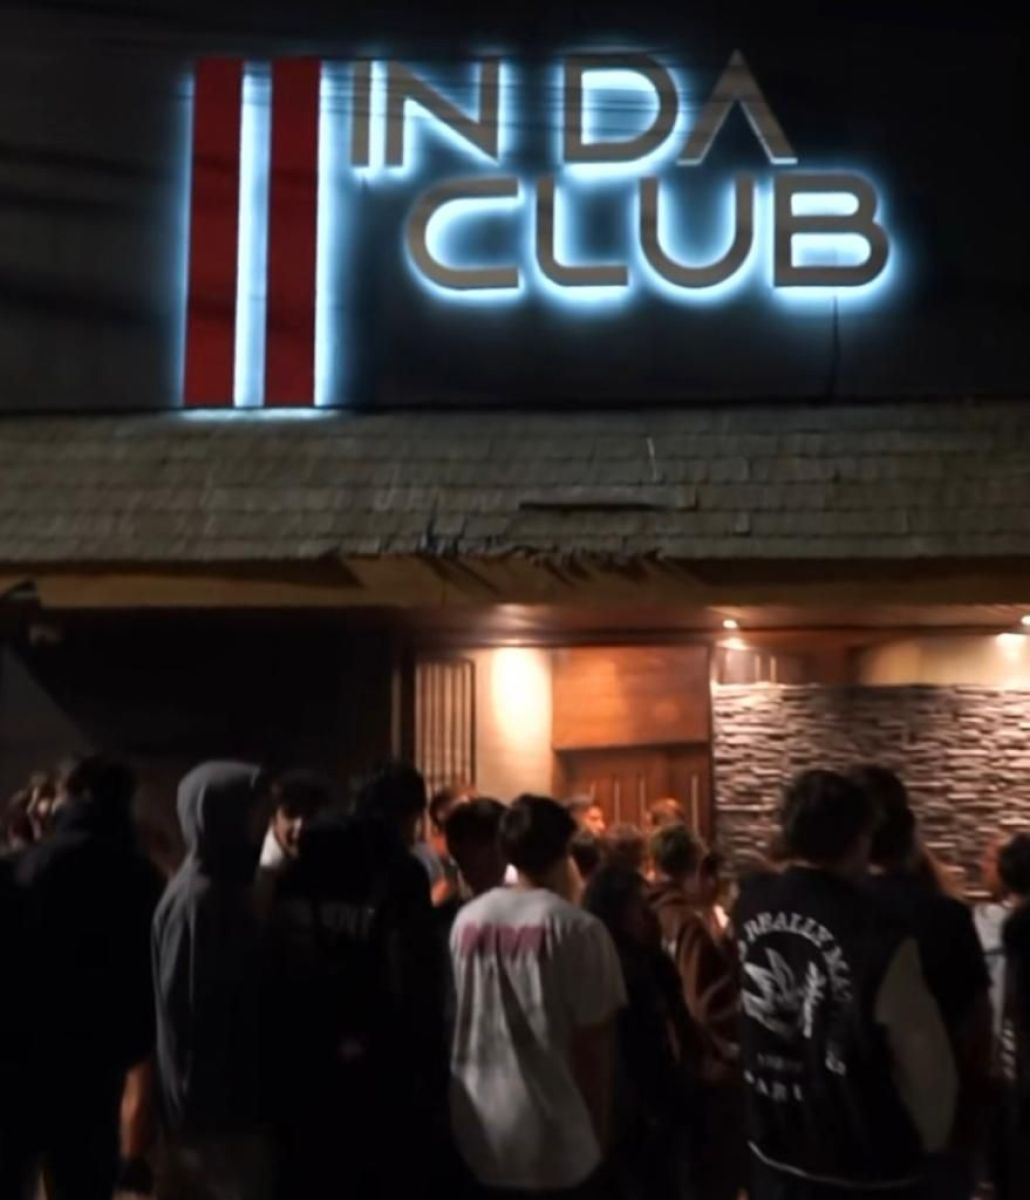 Agresiones en "IN DA Club": Denunciaron sobreventa de entradas y violencia a menores